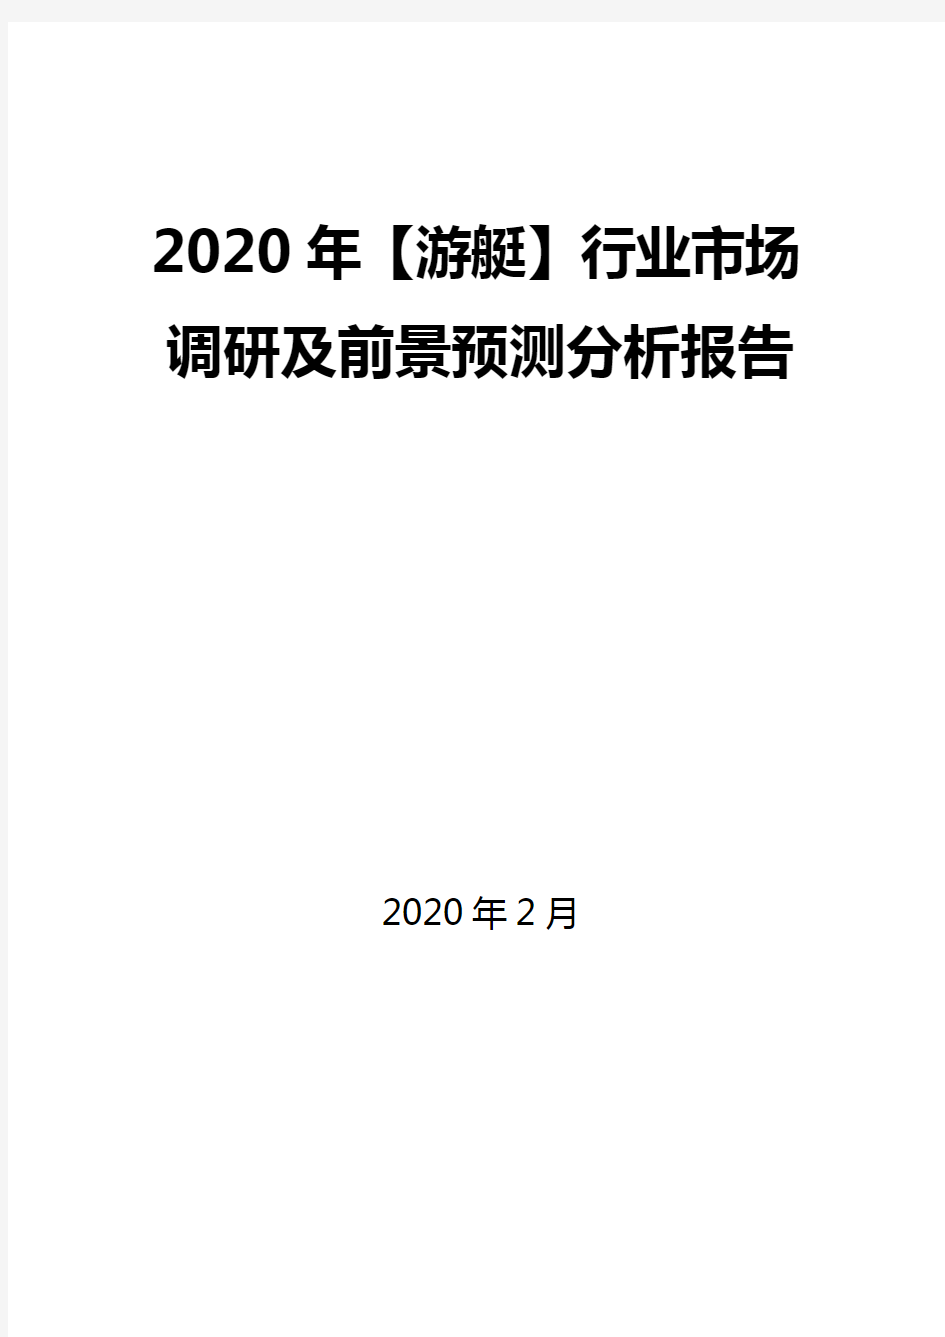 2020年【游艇】行业市场调研及前景预测分析报告